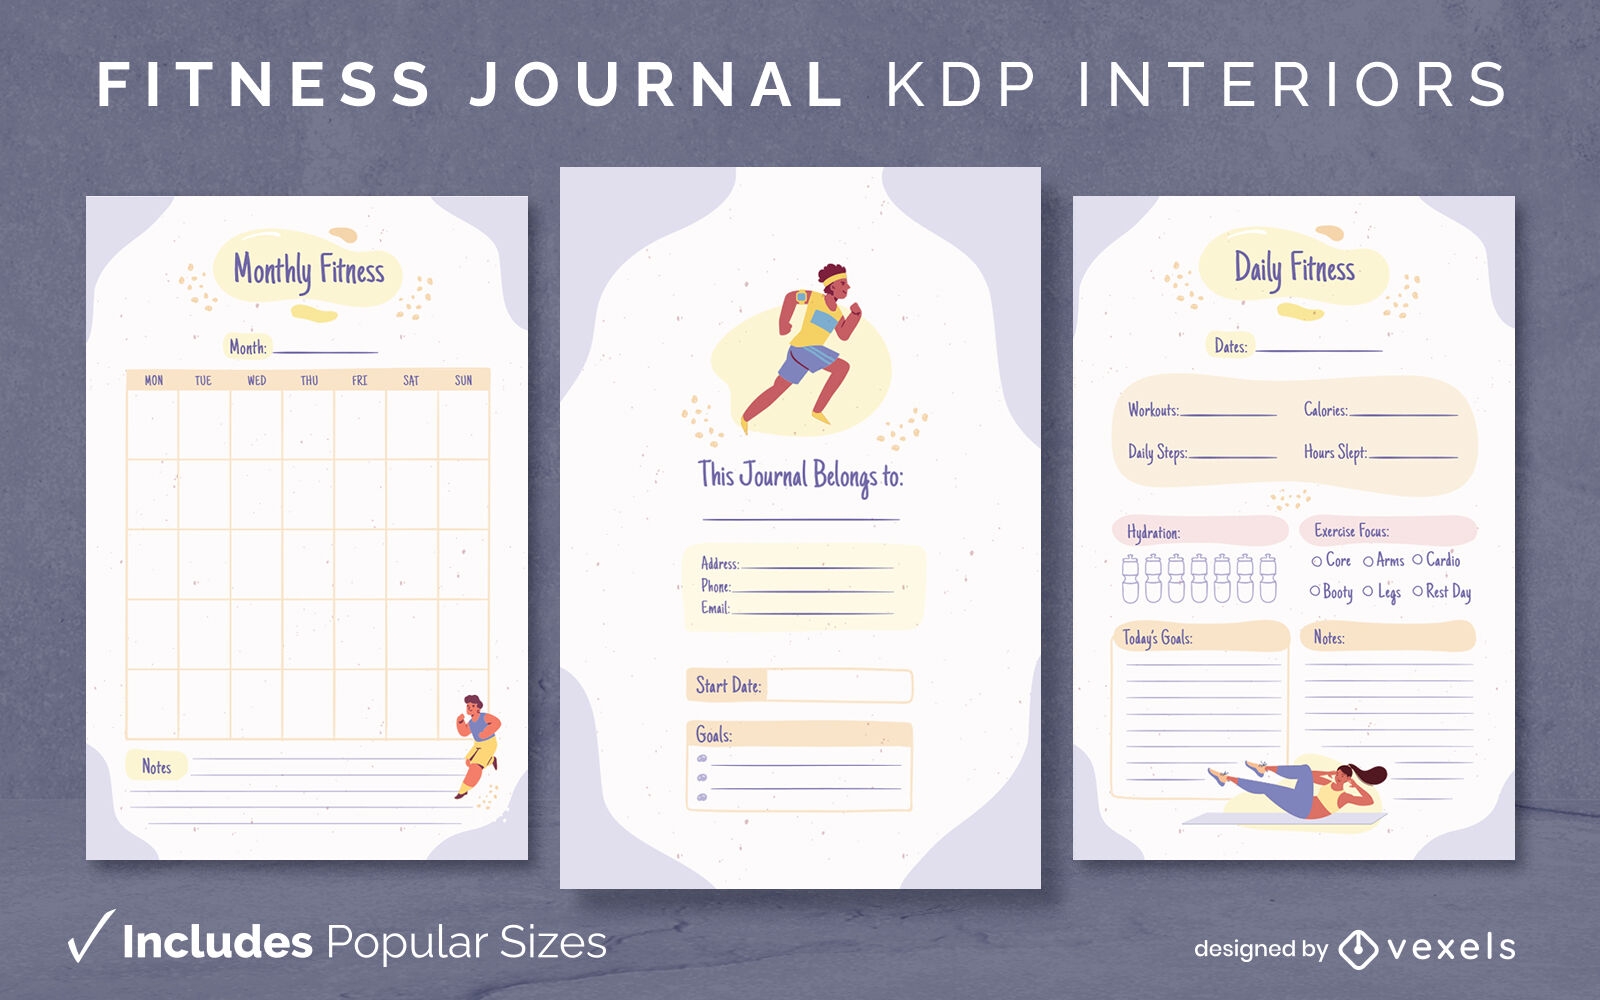 Livro de diário de fitness design de interiores plano KDP